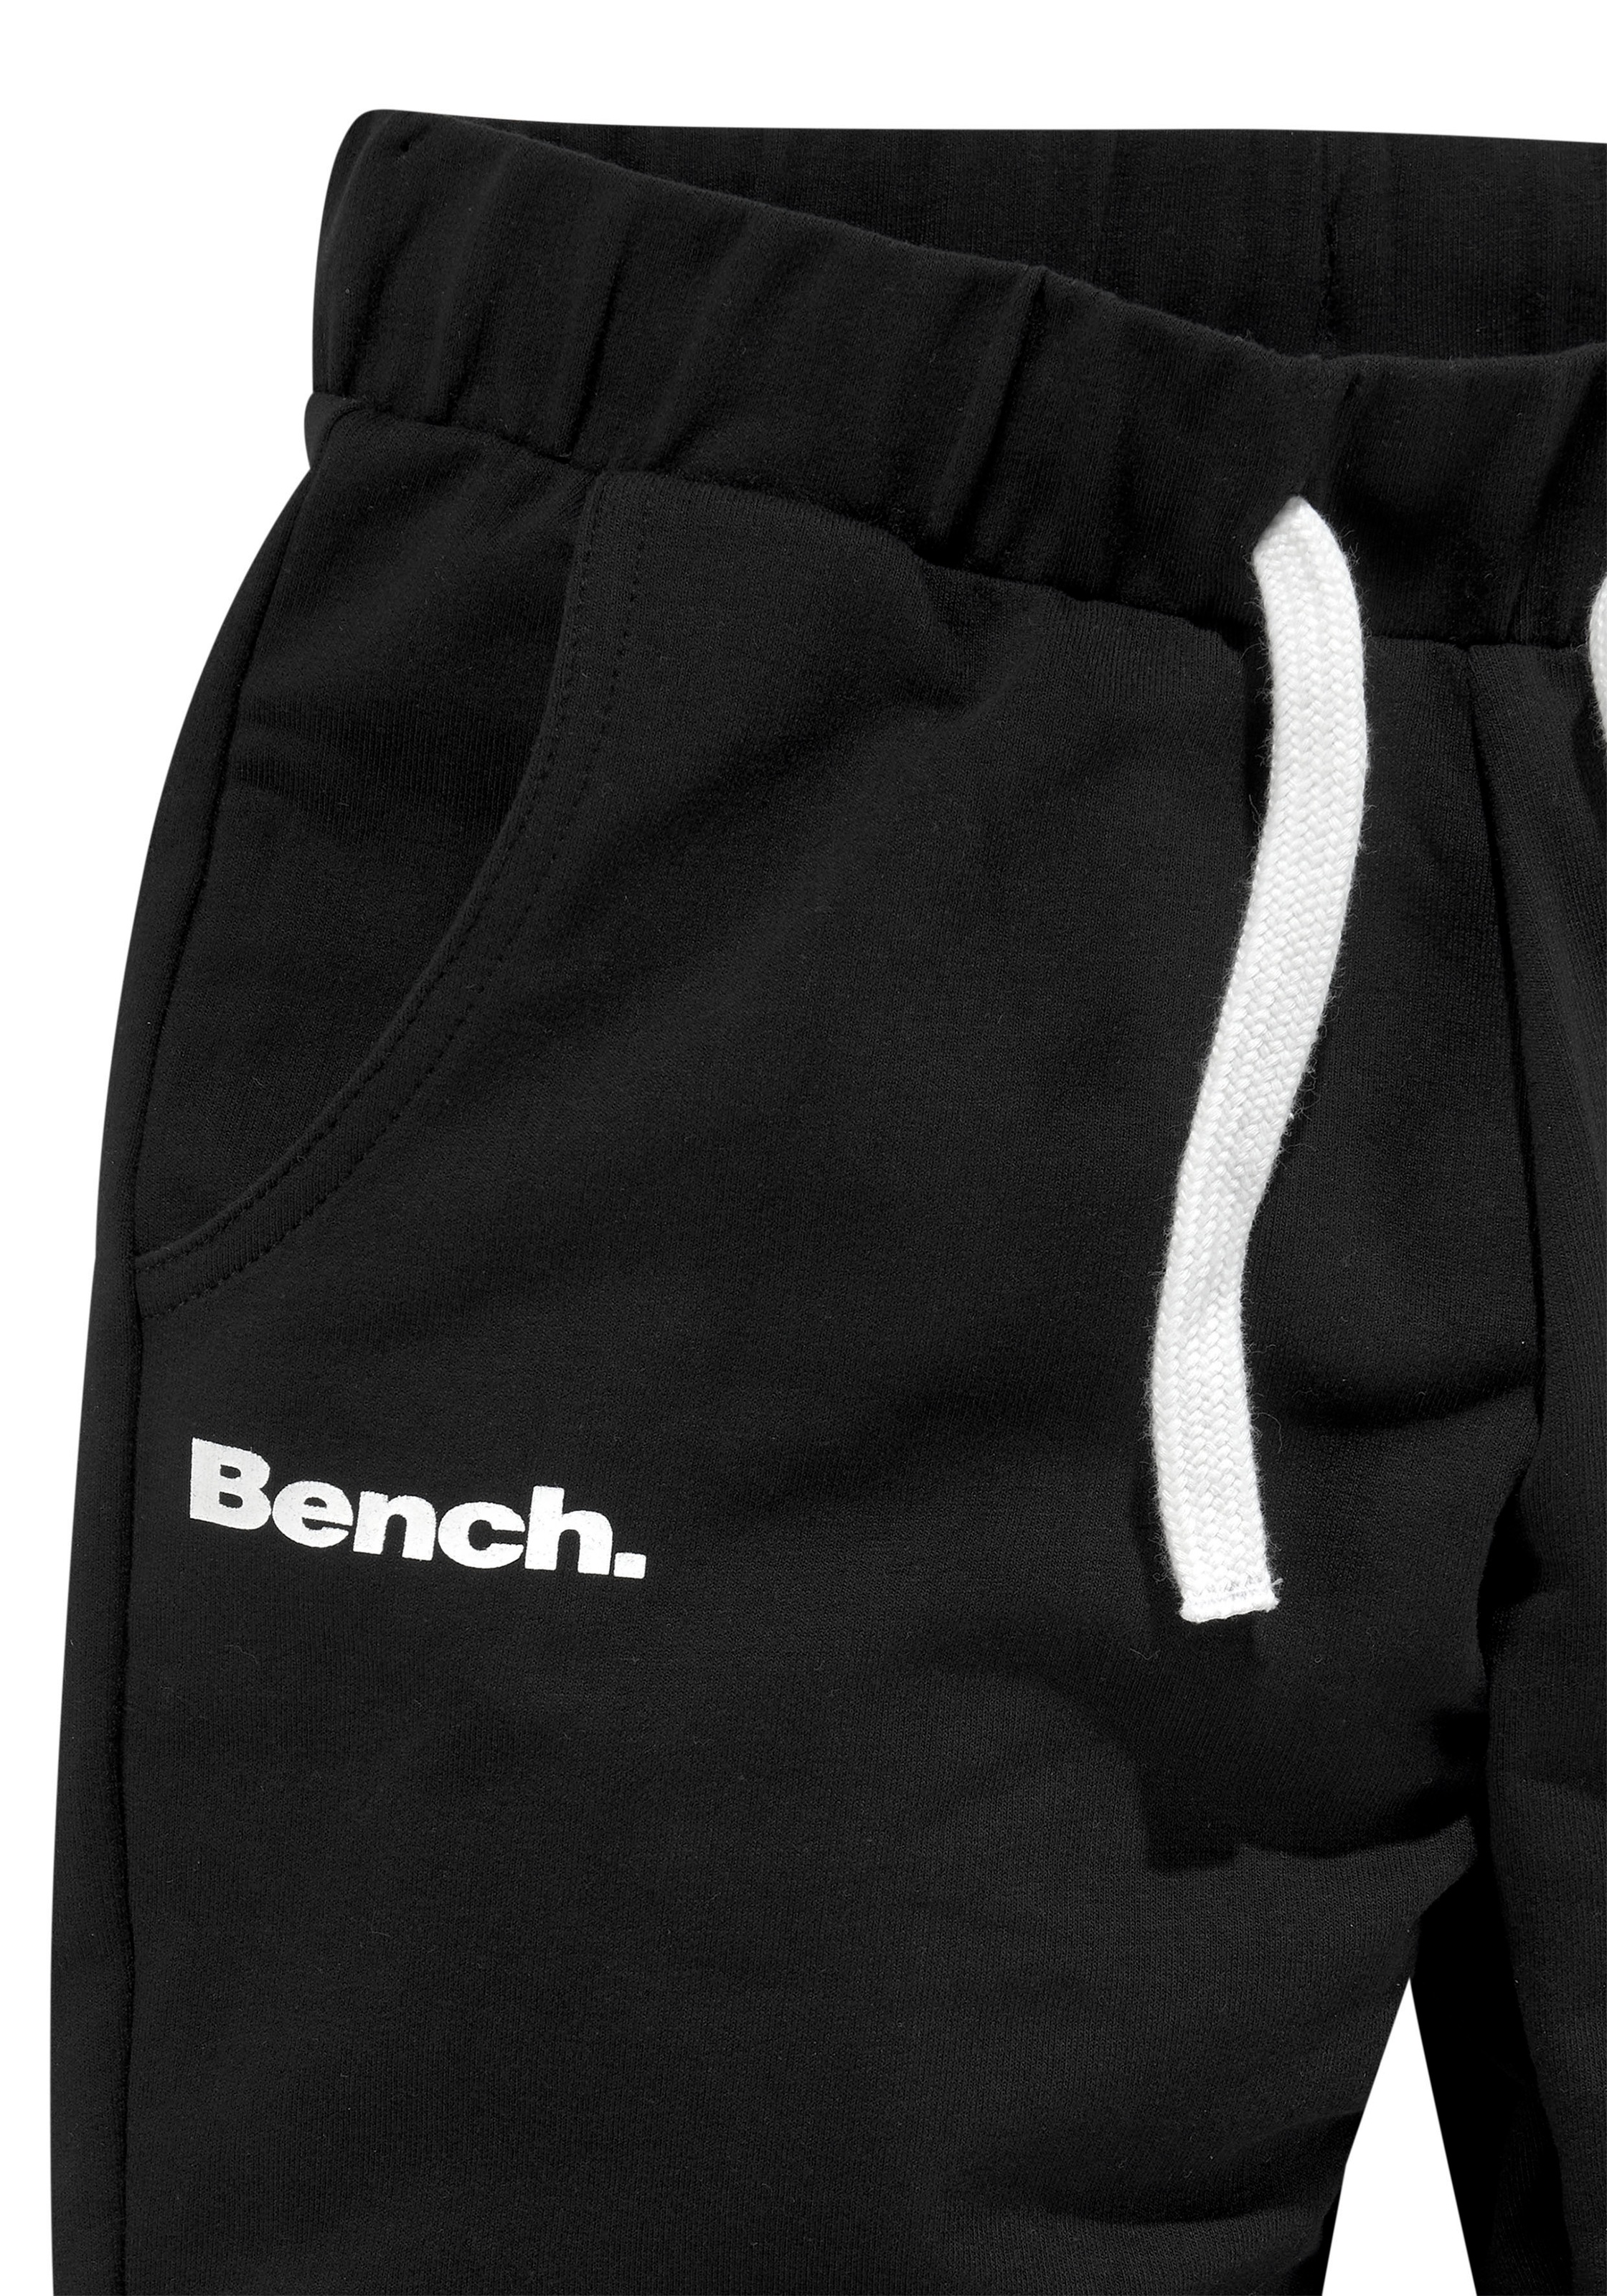 Bench. Sweathose, seitlichen kaufen mit online Cargotasche